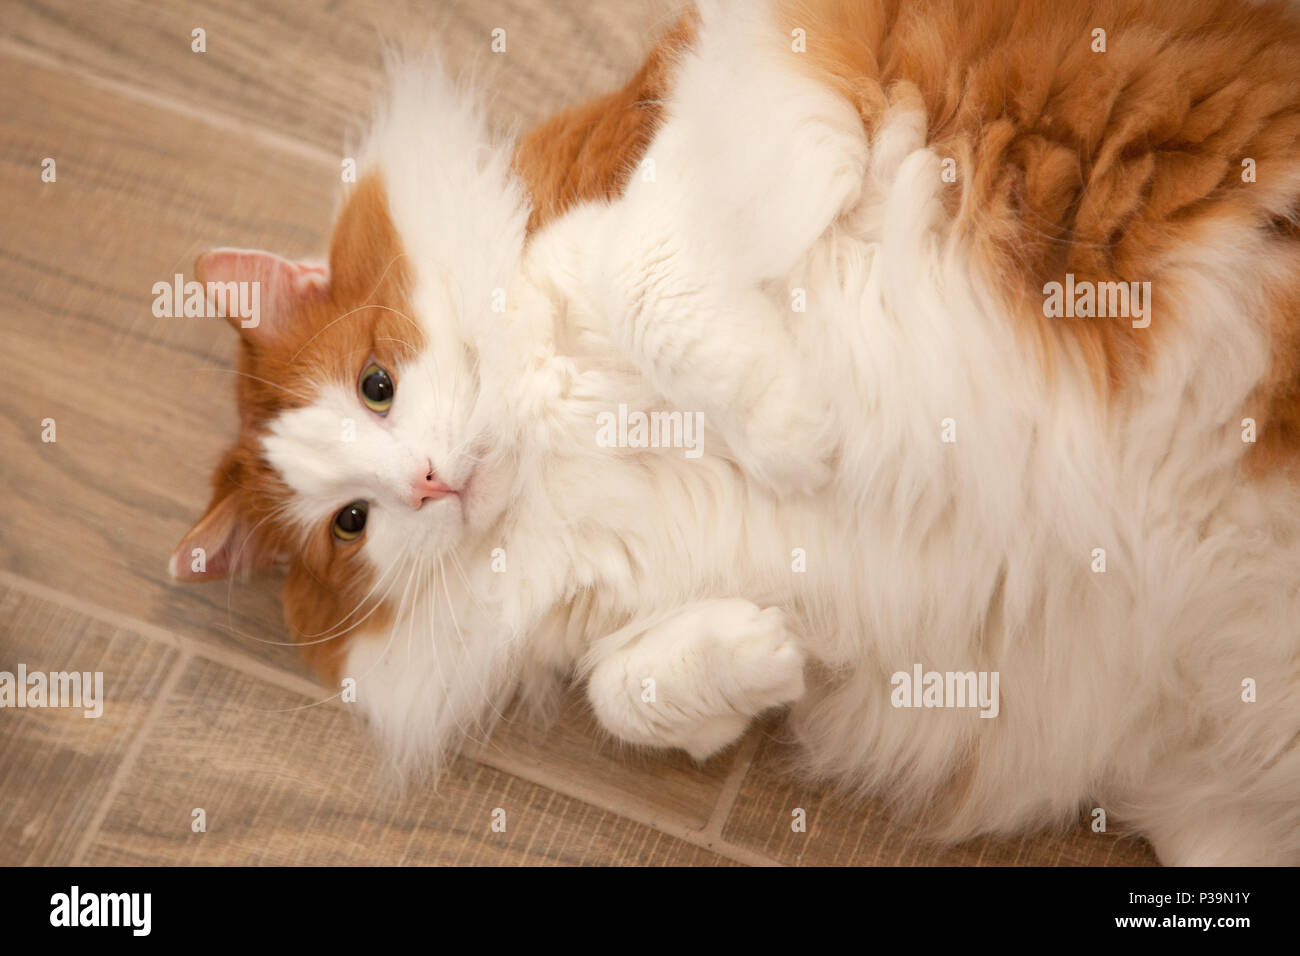 Flauschigen weißen und orangefarbenen Katze wirft Festlegung auf den Rücken und wartet, dass Aufmerksamkeit Stockfoto